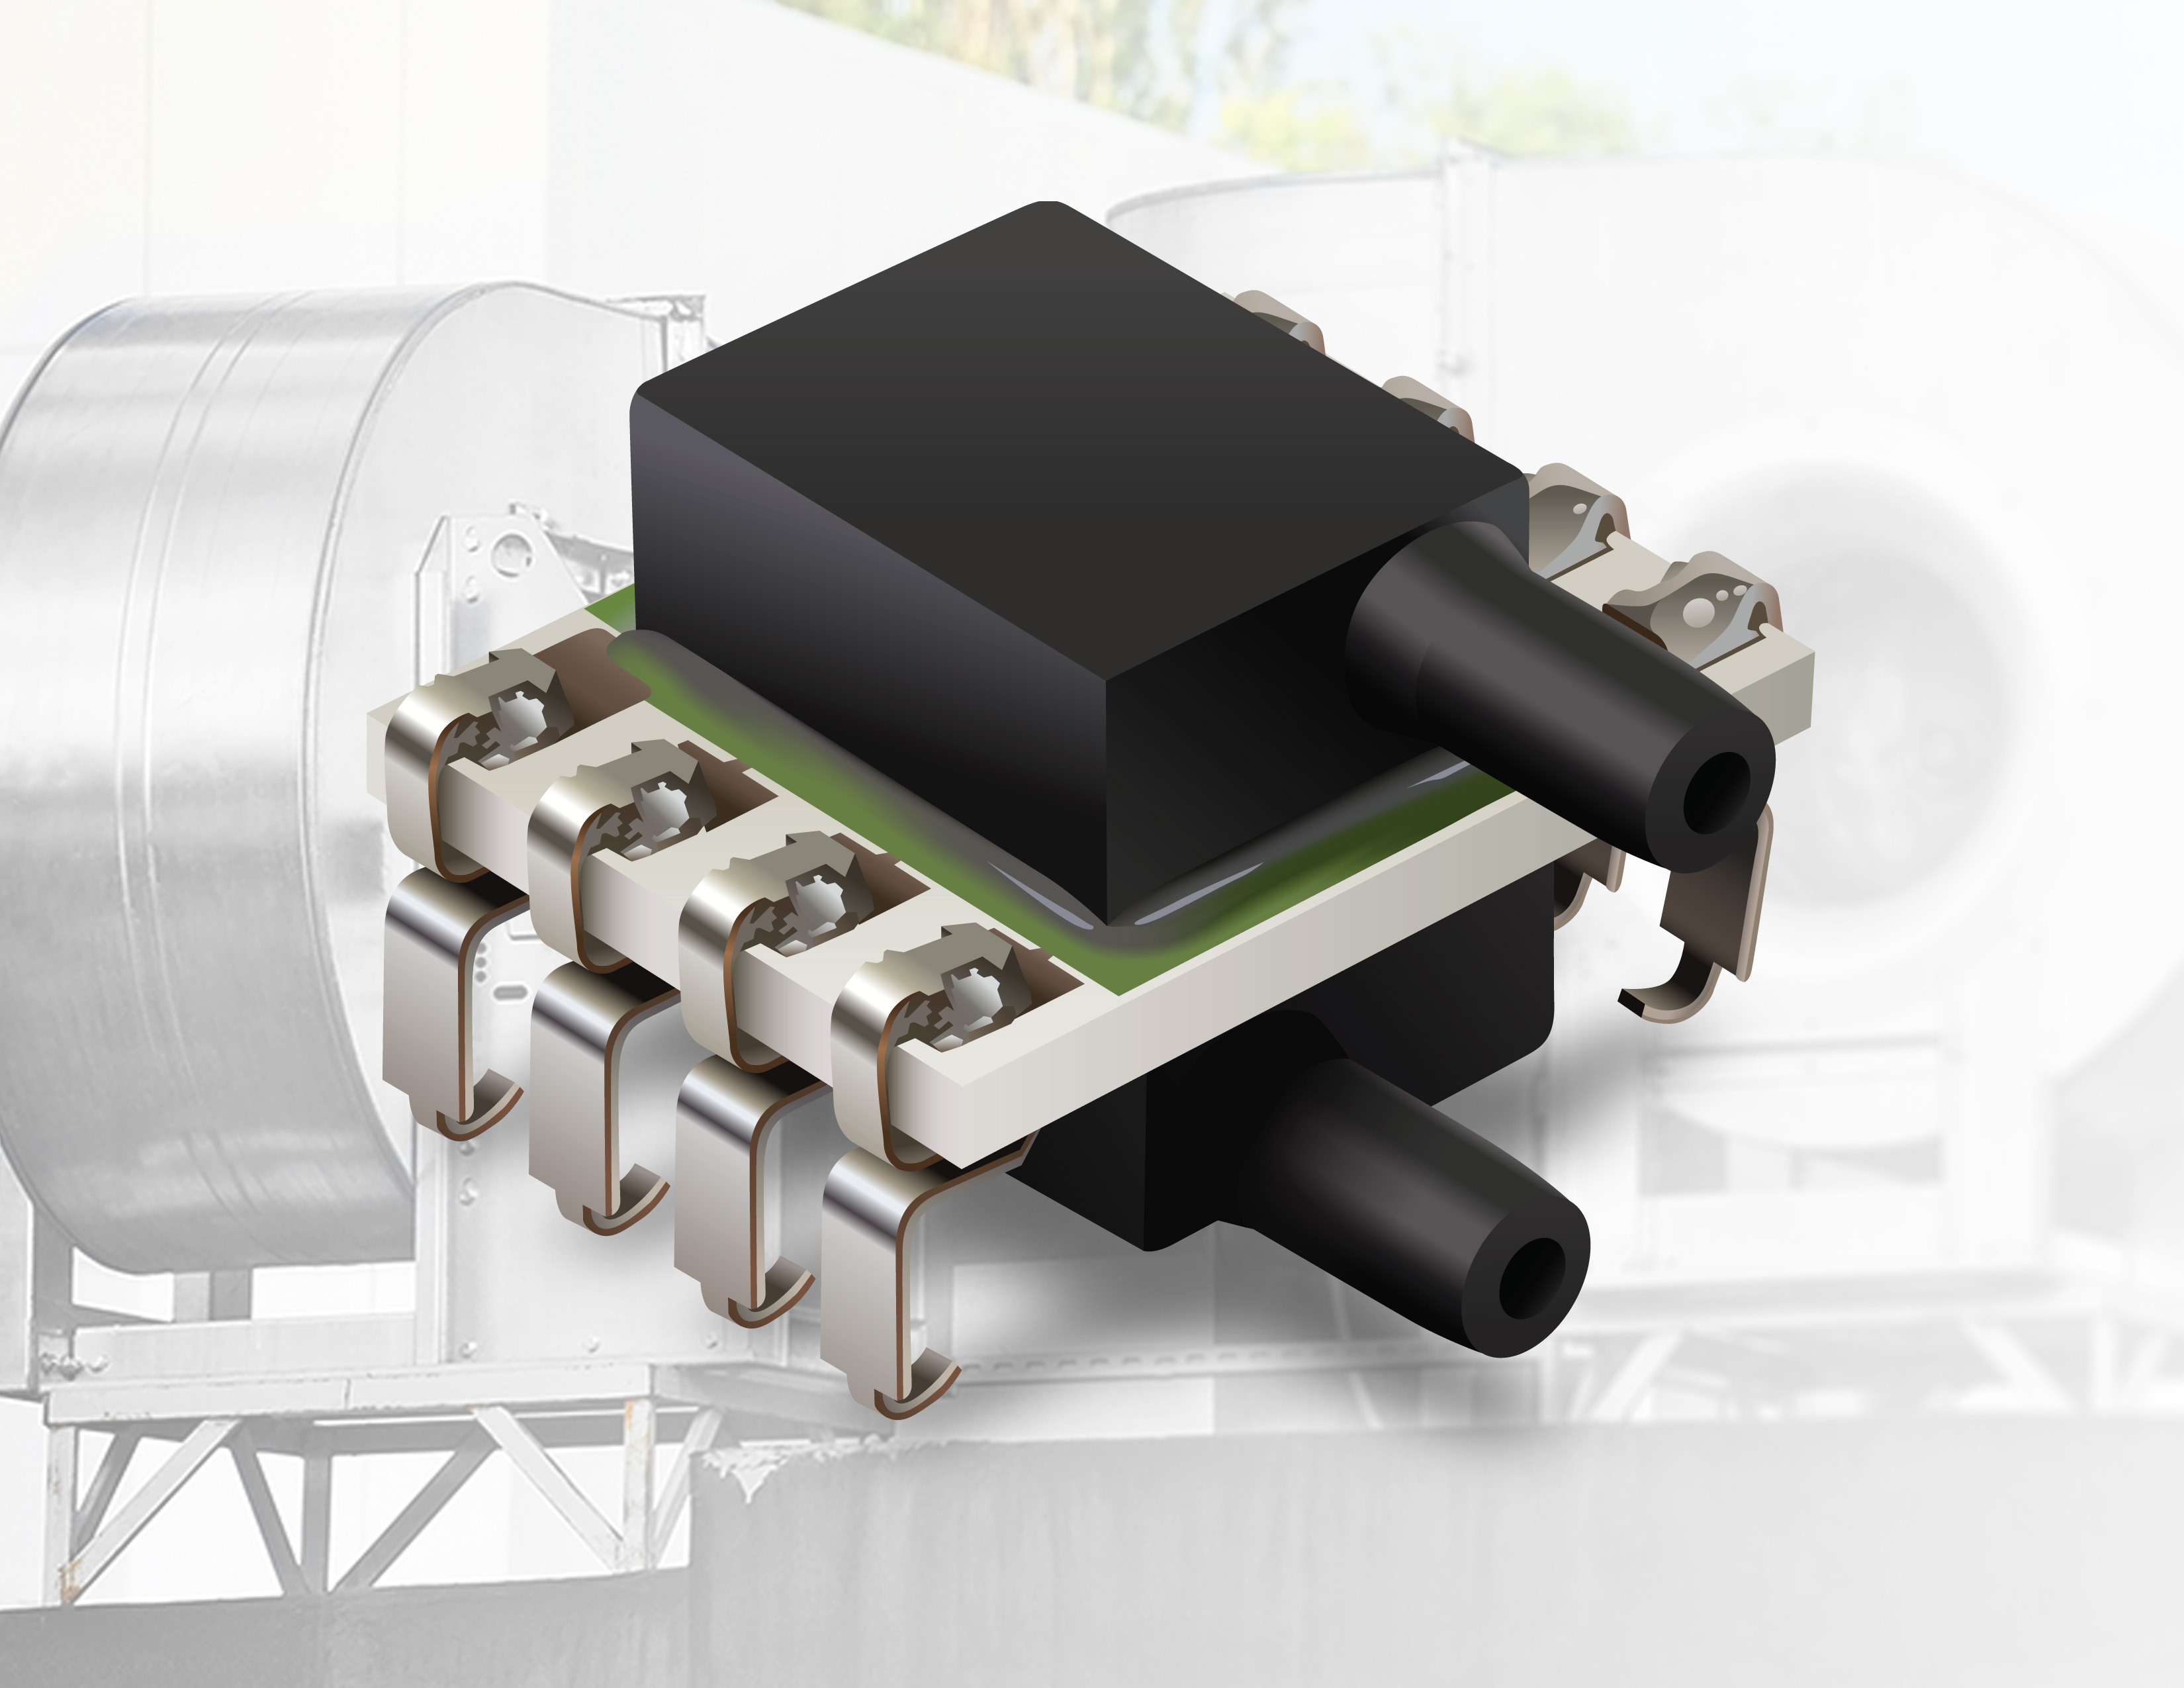 Bourns Introduces MEMS Environmental Sensor Designed for ...